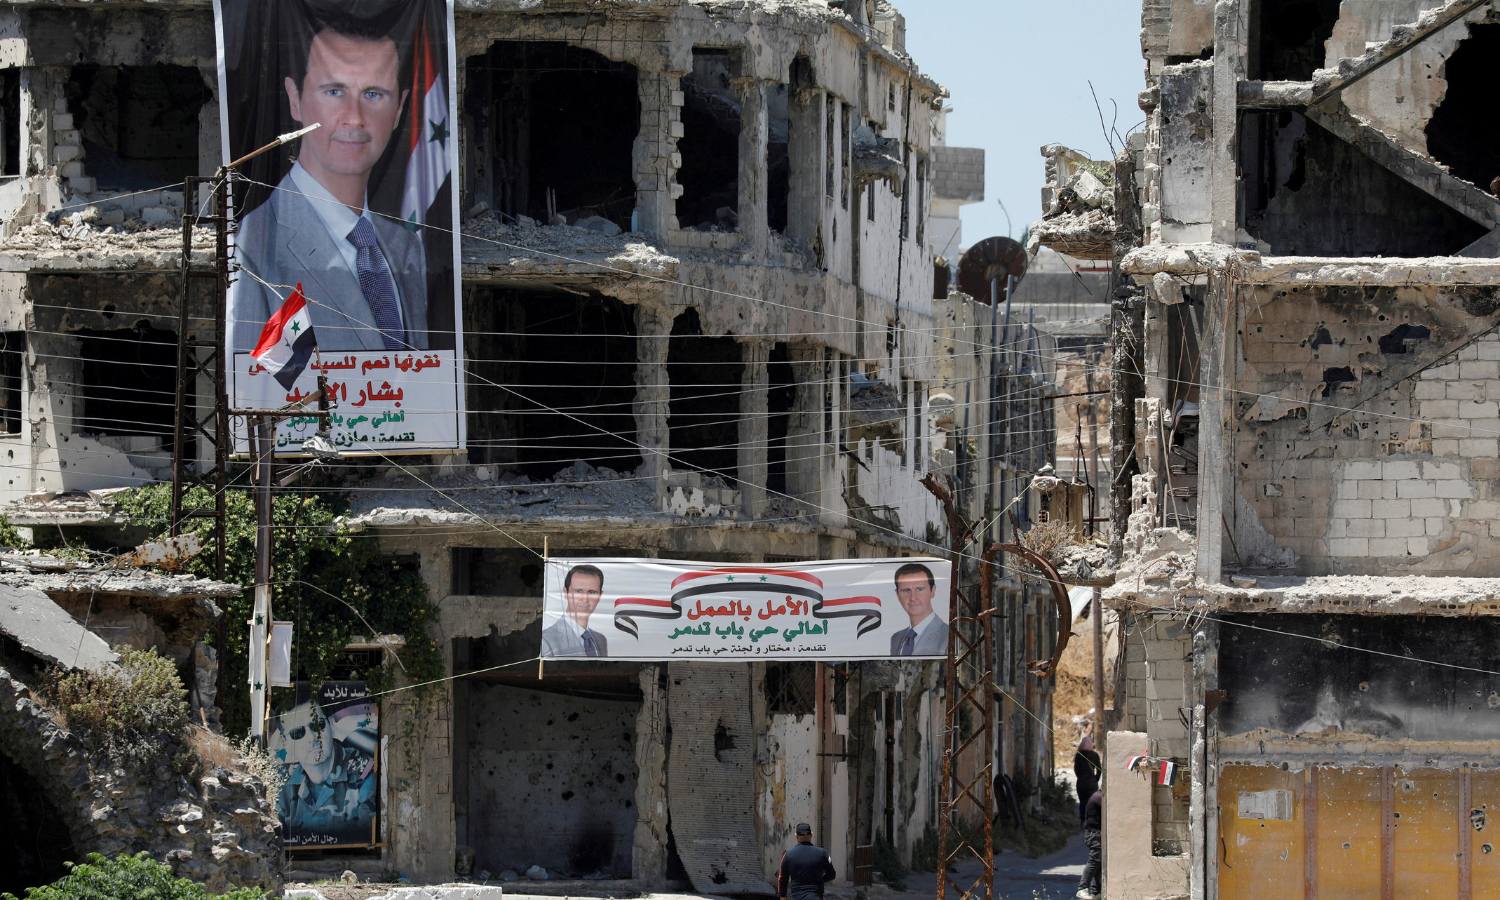 لافتتات داعية لانتخاب الأسد علقت على المباني المدمرة في حمص (رويترز)